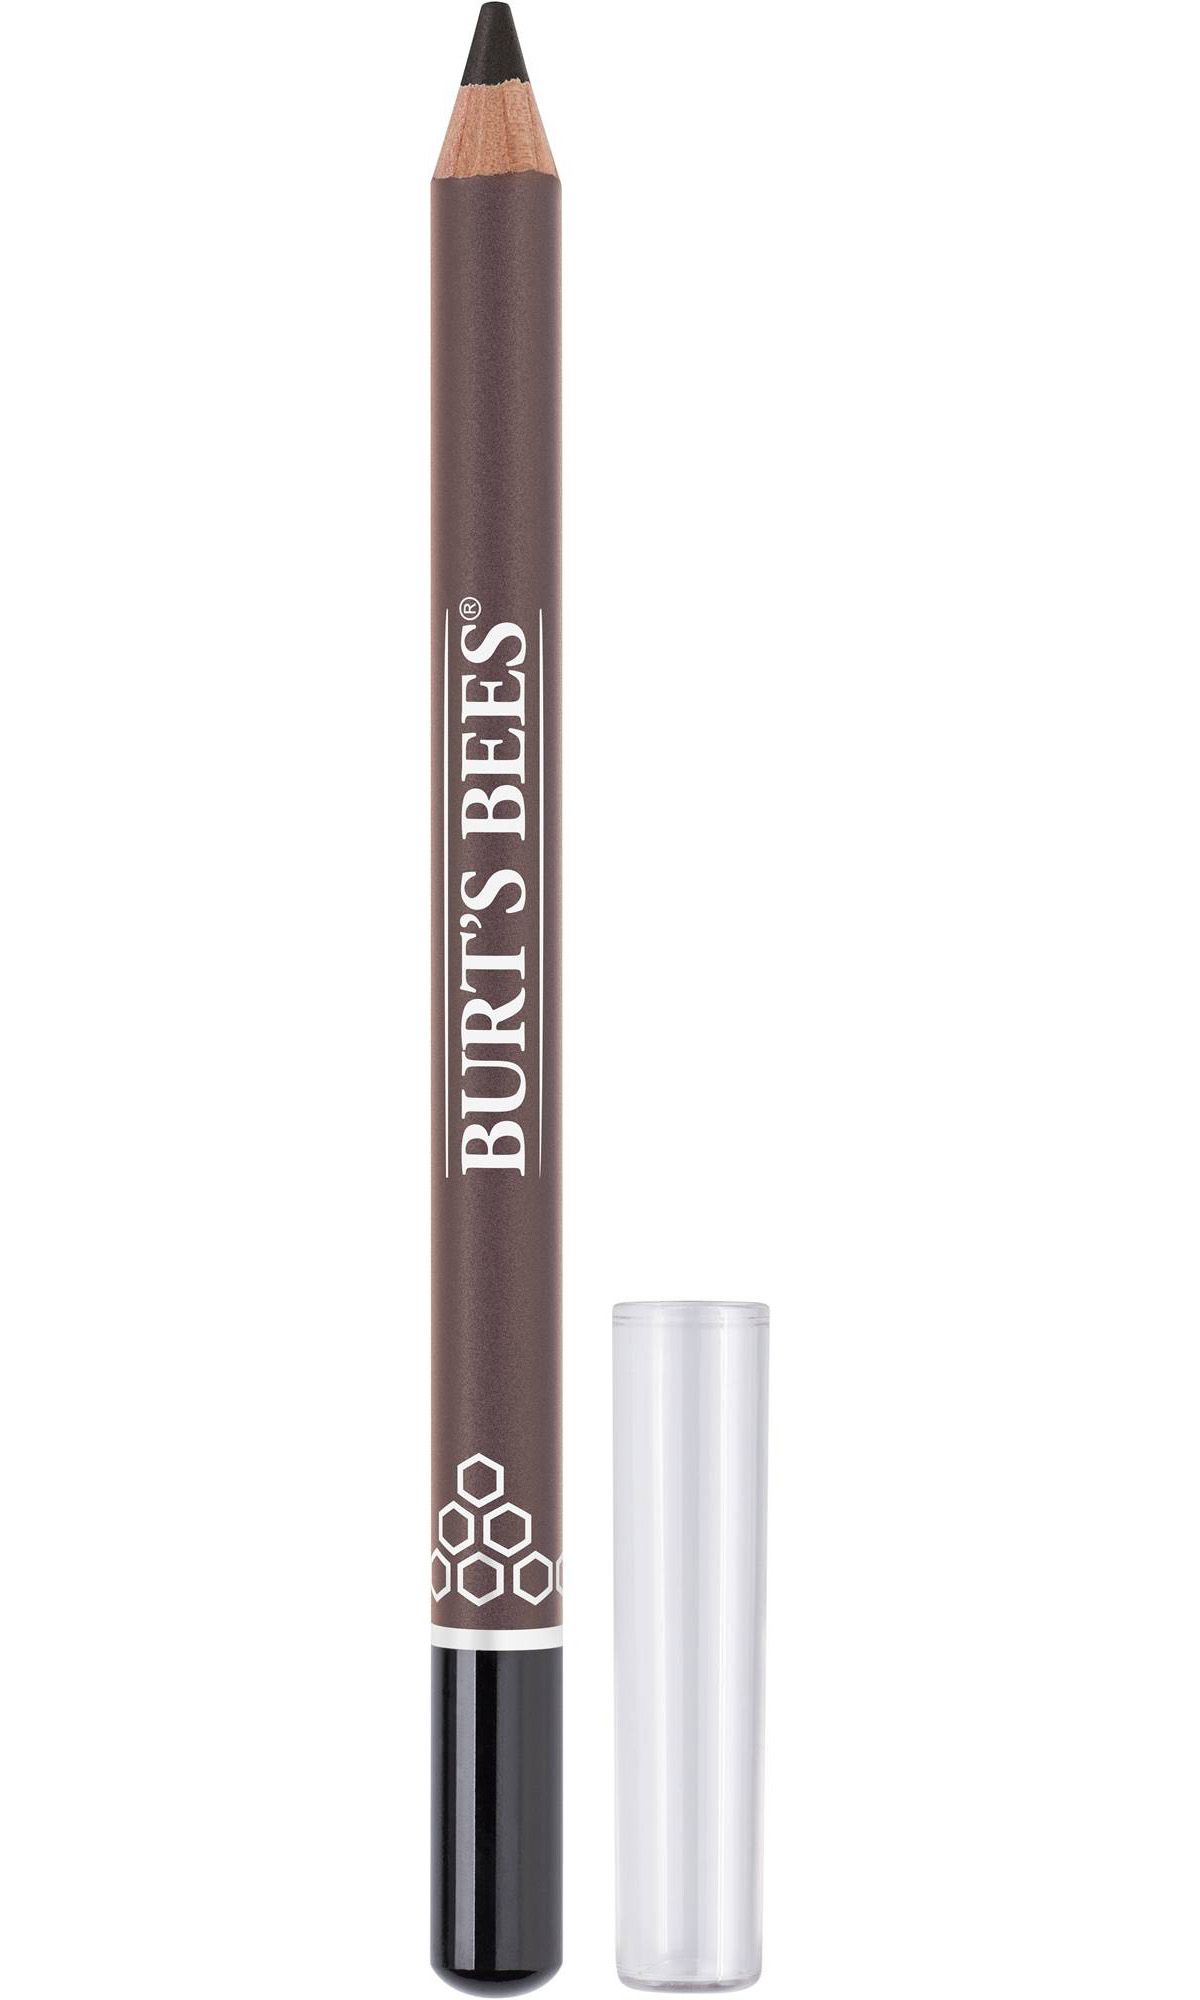 Best for Senstive Eyes: Burt's Bees Nourishing Eyeliner Pencil